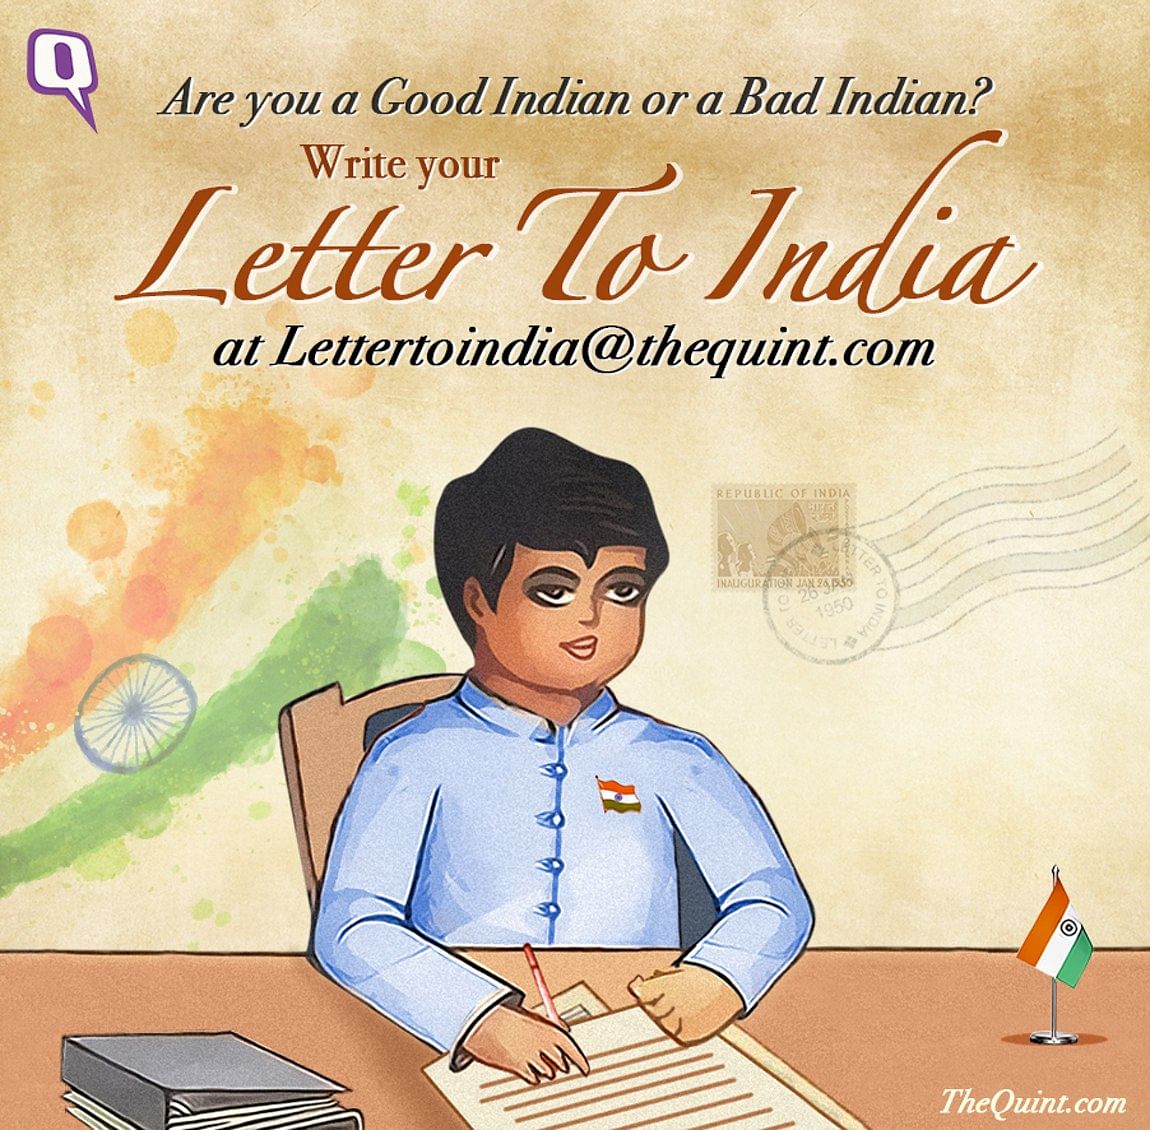 

तो आप कौन हैं? ‘गुड इंडियन’ या ‘बैड इंडियन’? आपको क्या लगता है एक गुड इंडियन बनने के लिए क्या करने की जरूरत है?